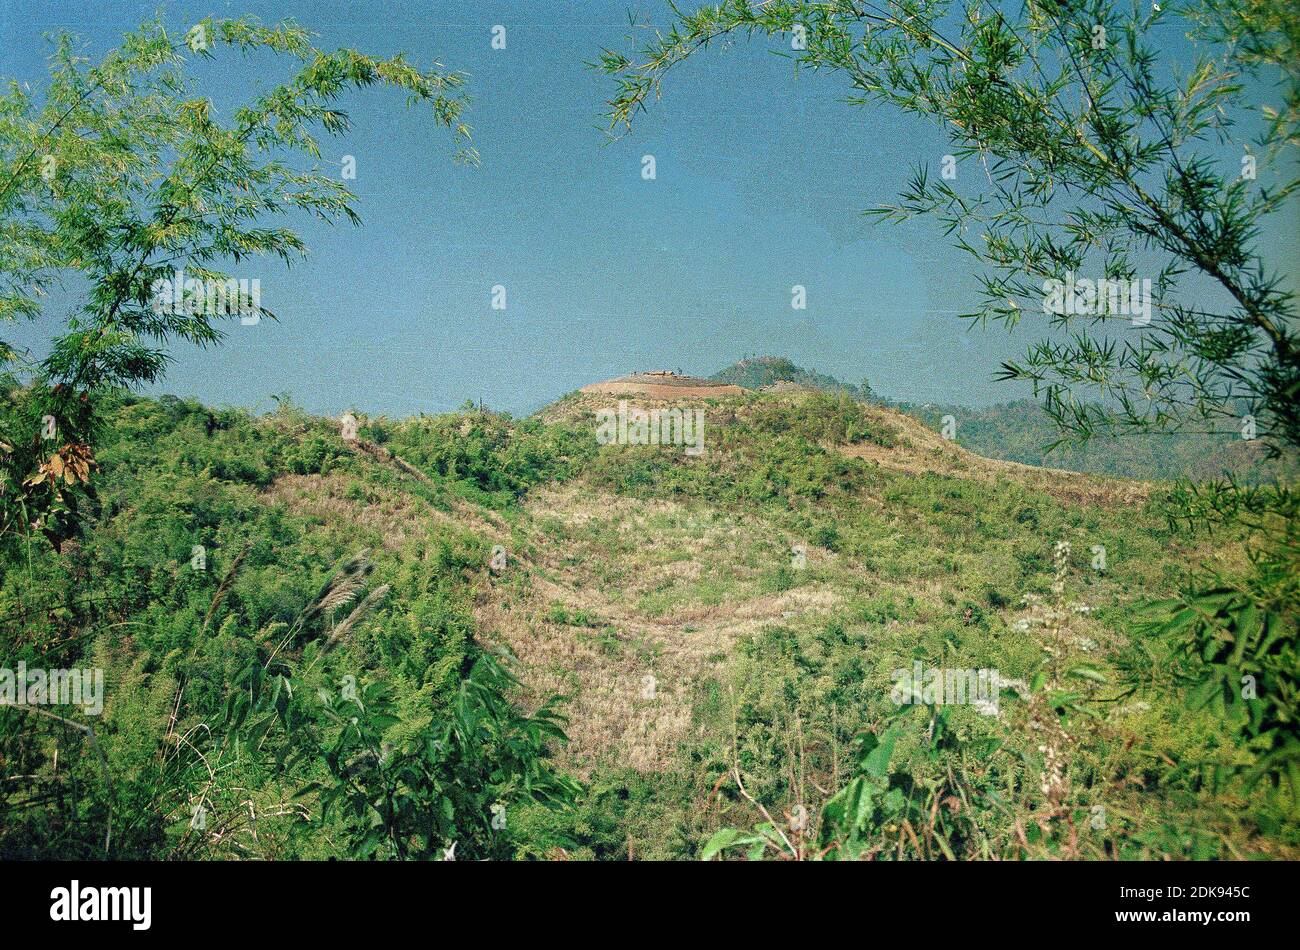 Fort réputé au sommet d'une colline maintenu par la célèbre cargaison de drogue Khun sa, juste au-dessus de la frontière birmane près de Fang, dans le nord de la Thaïlande (1990) Banque D'Images